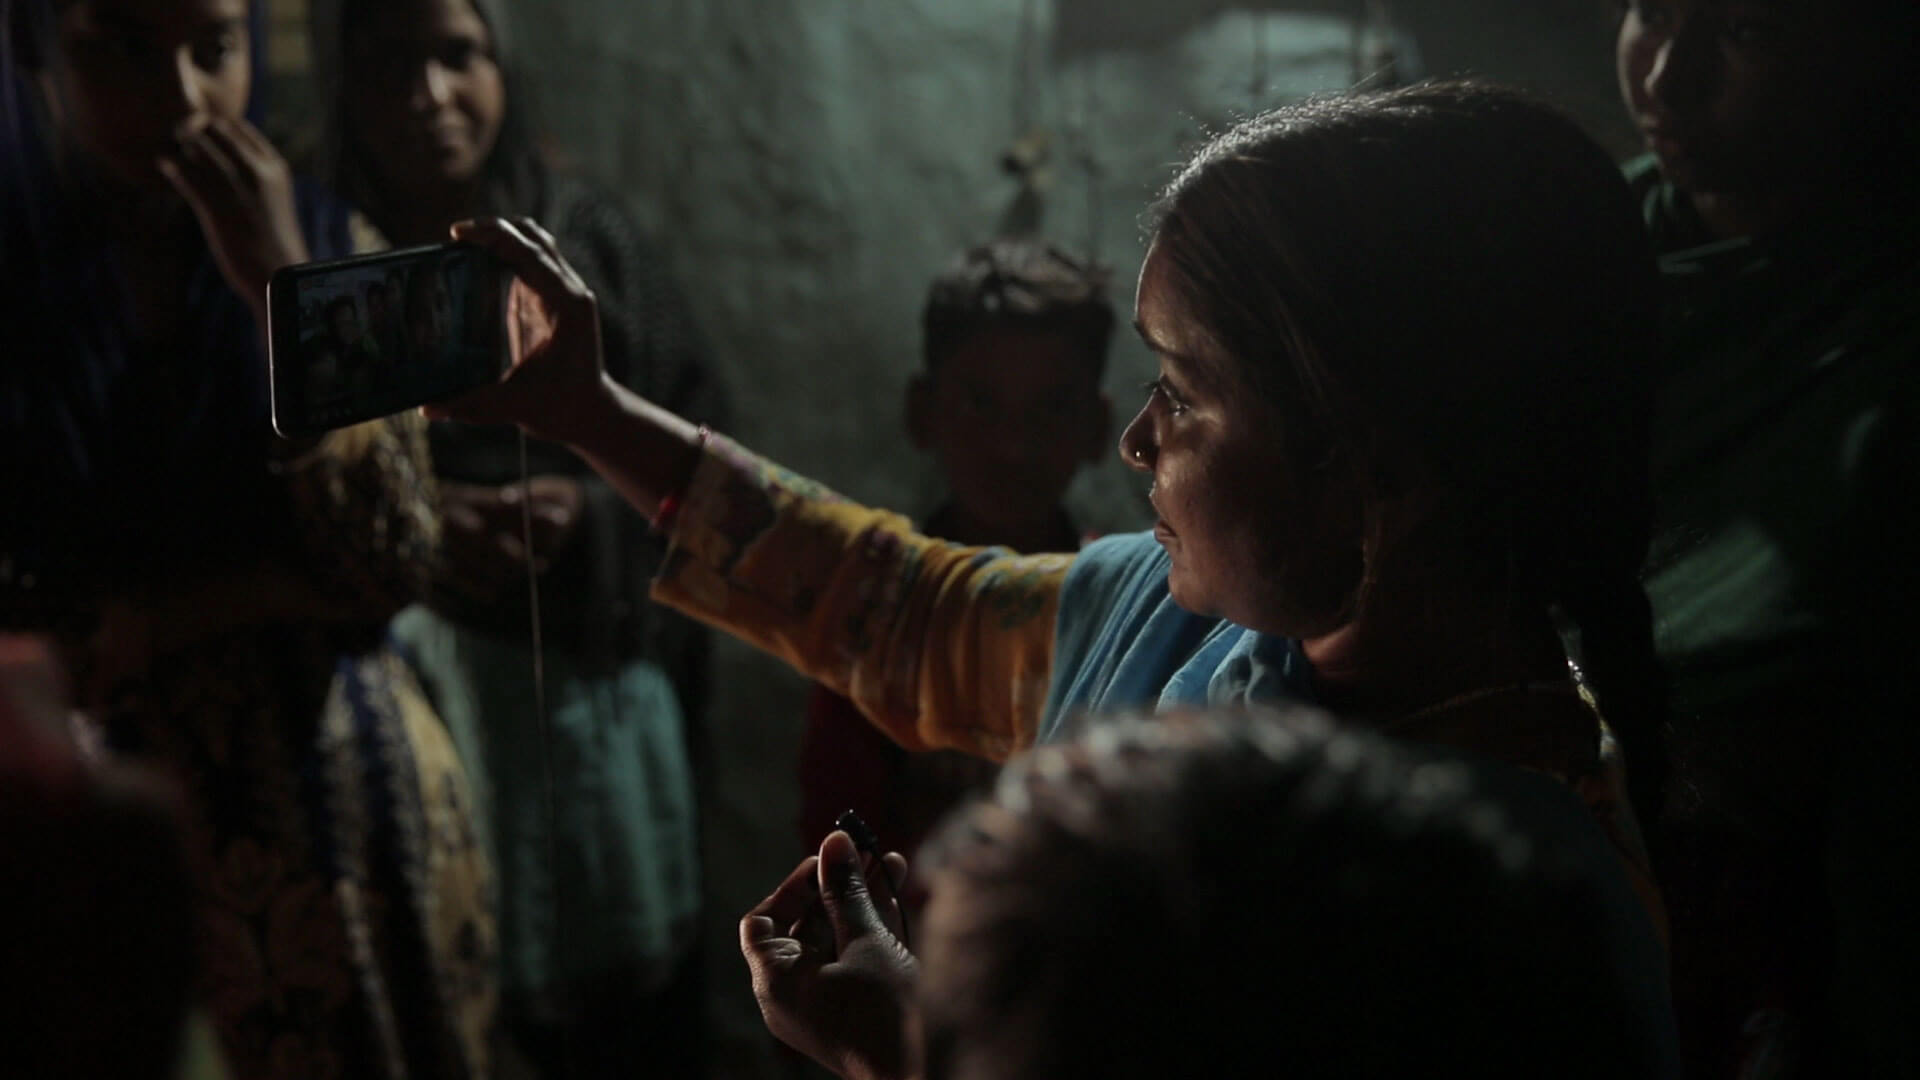 Cena do documentário Escrevendo com Fogo. A cena mostra uma mulher filmando com o celular em um ambiente escuro e cheio de outras pessoas ao redor.